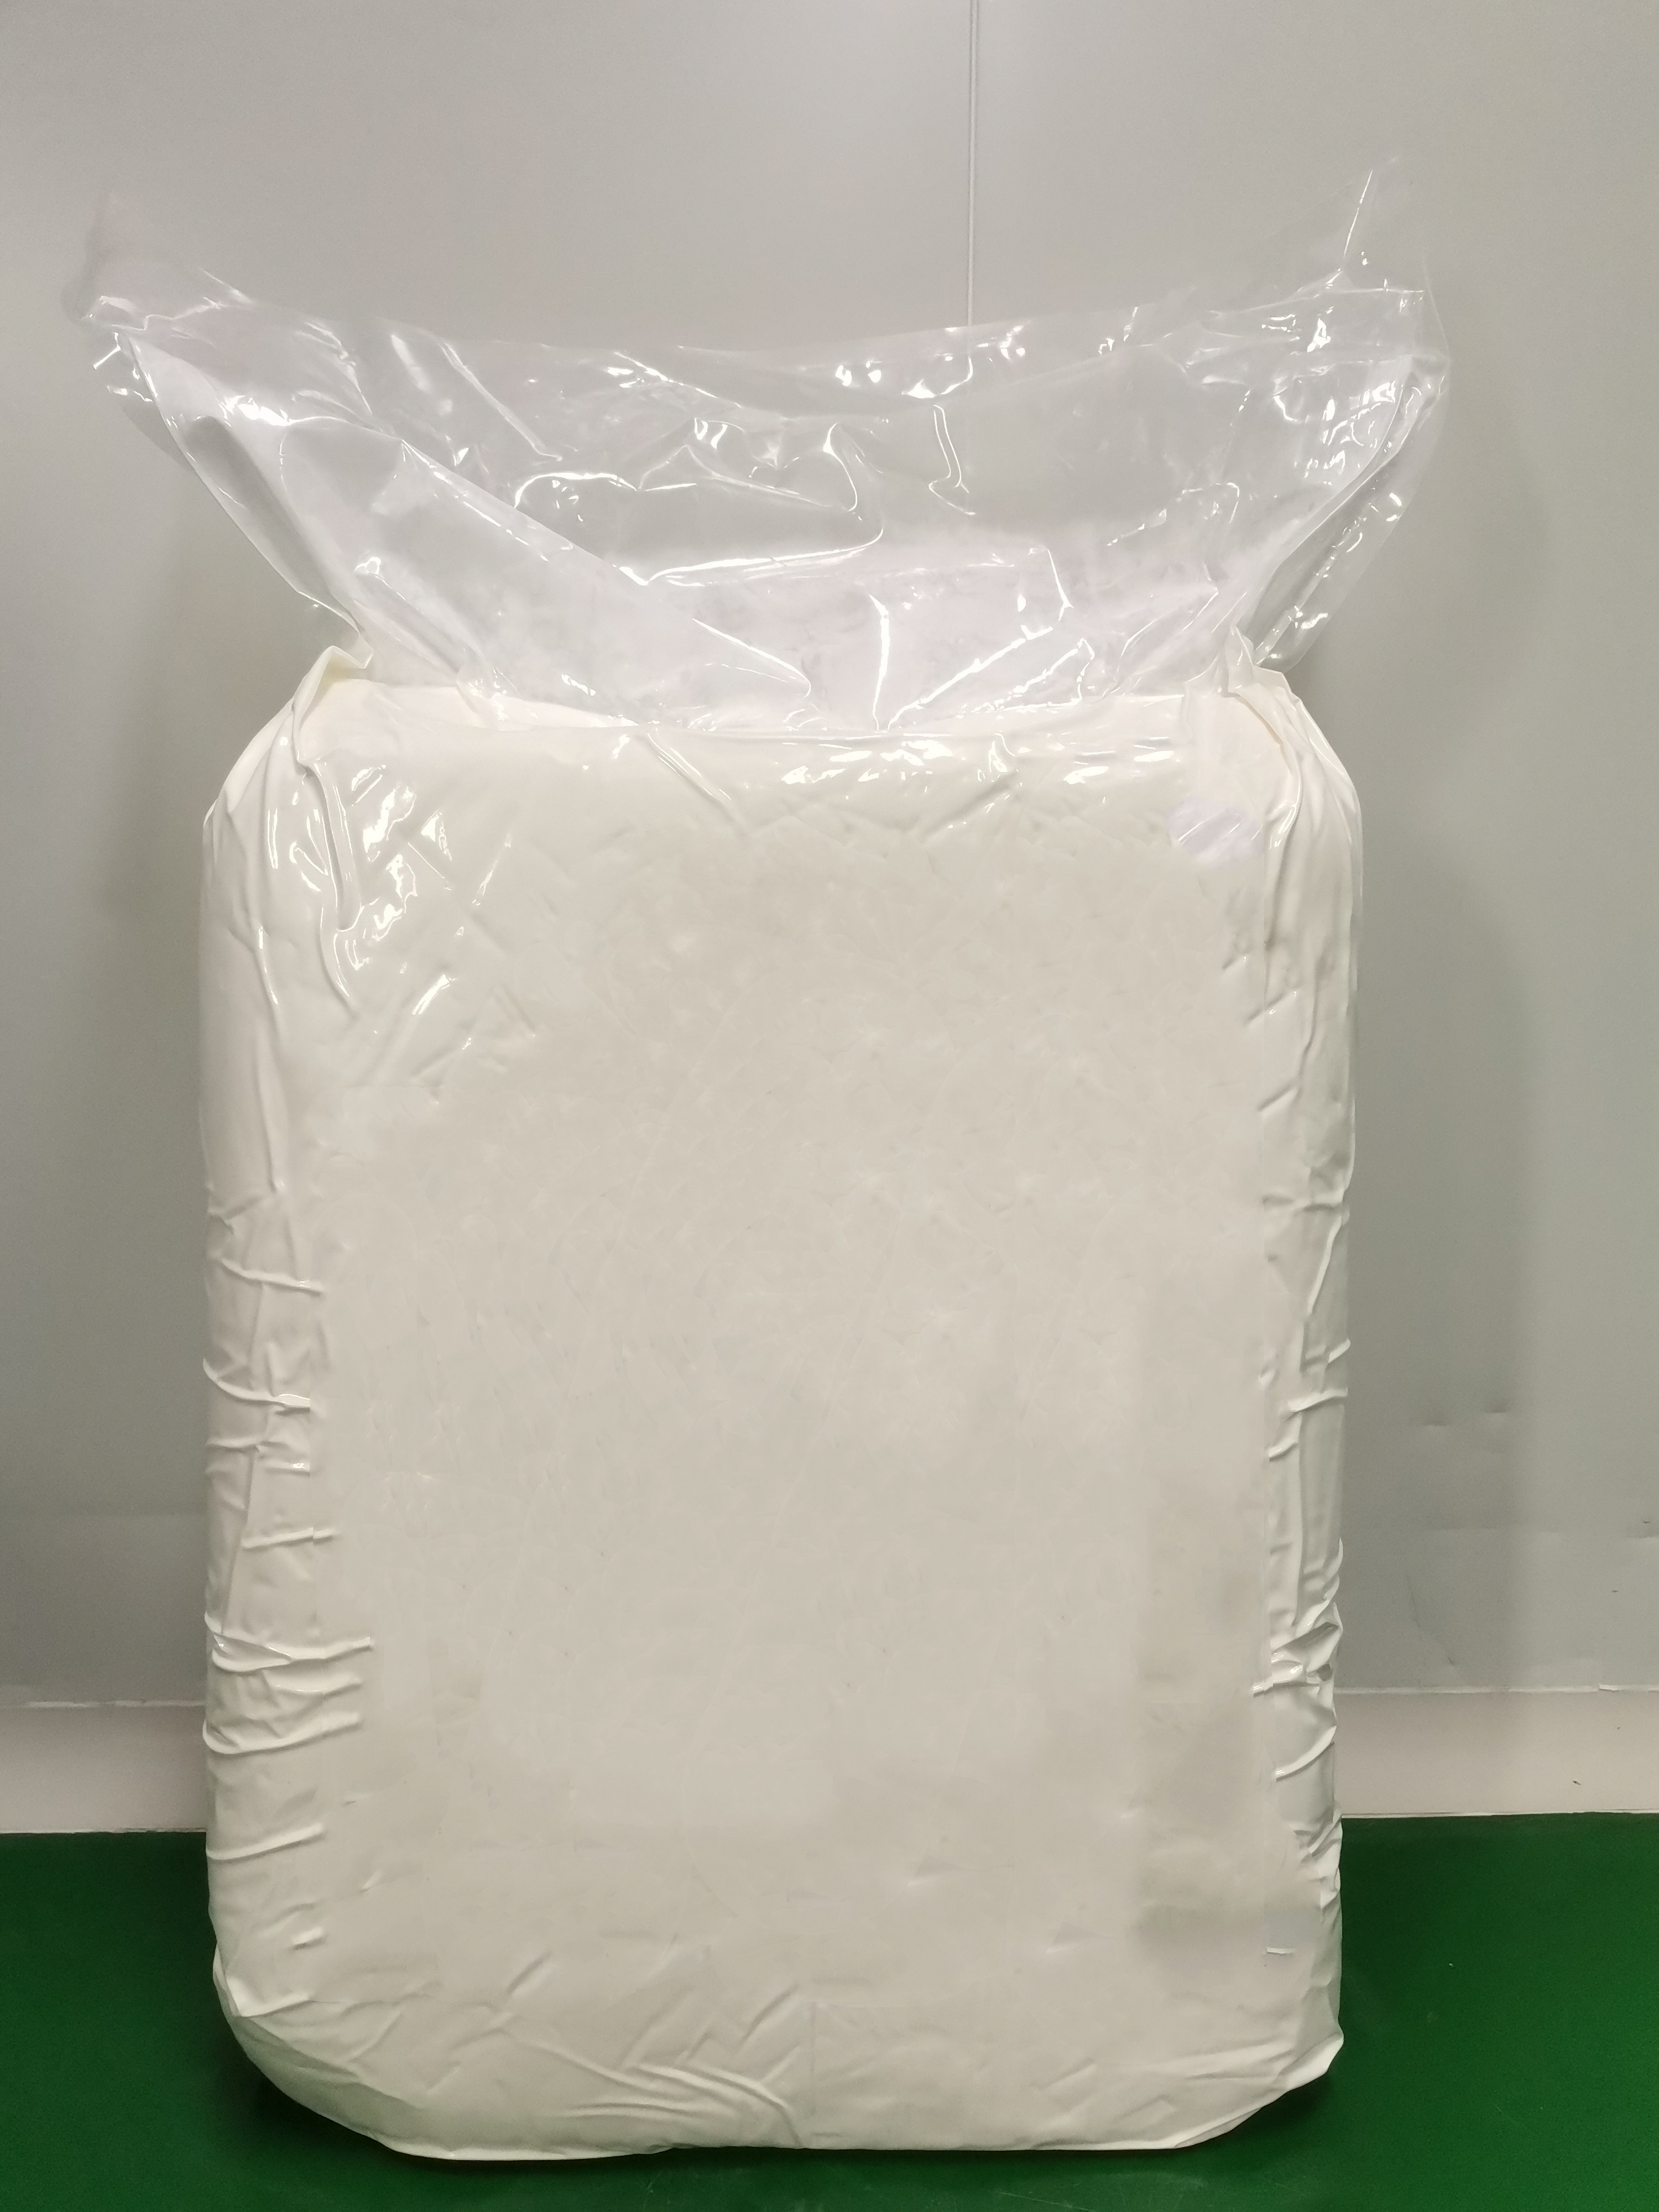 bovine collagen inner packing- plastic bag